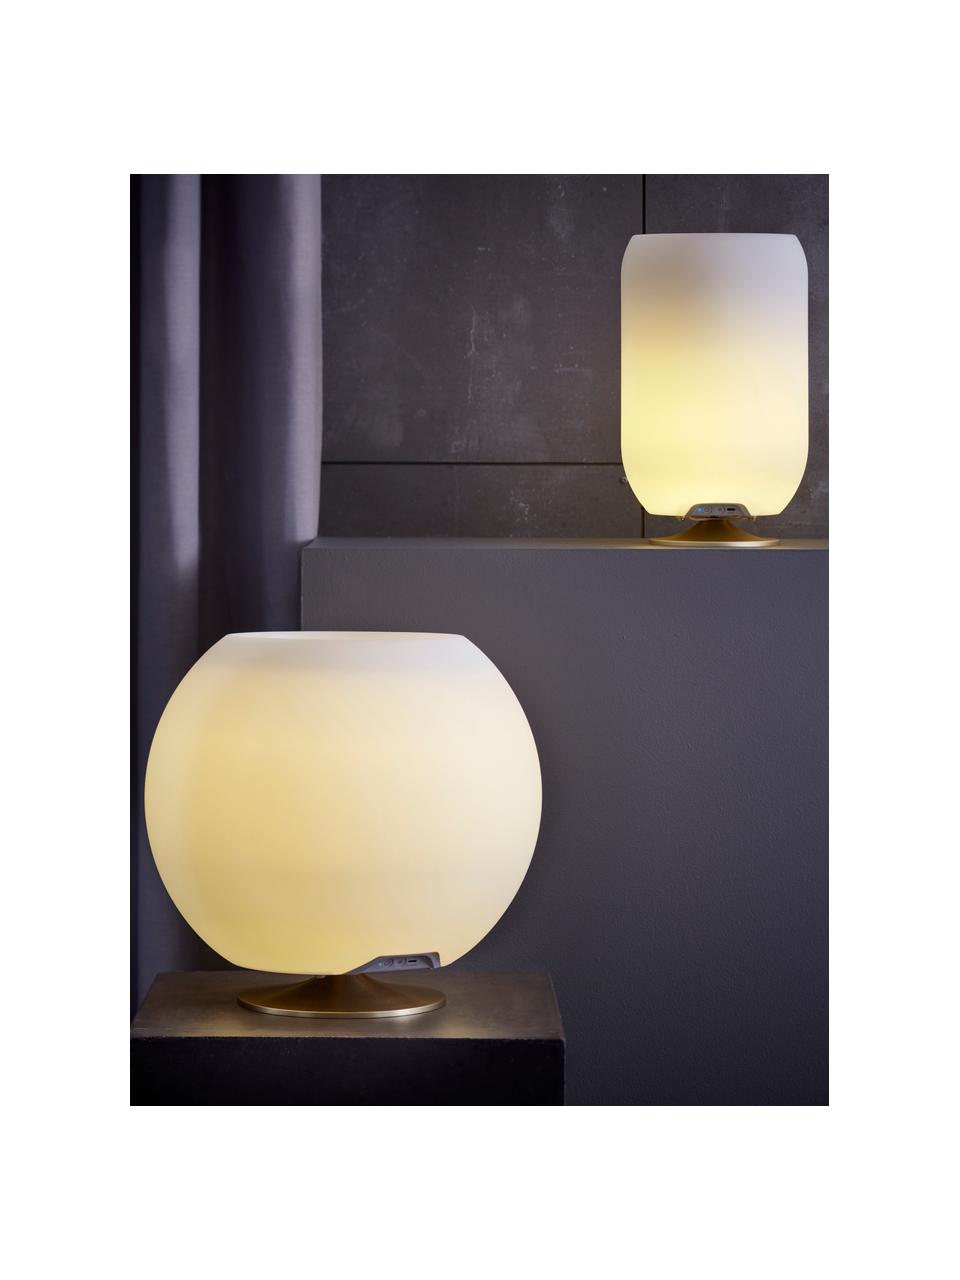 Dimbare LED tafellamp Atmos met Bluetooth-luidspreker en flessenkoeler, Lampenkap: polyethyleen, Wit, goudkleurig, Ø 22 x H 37 cm